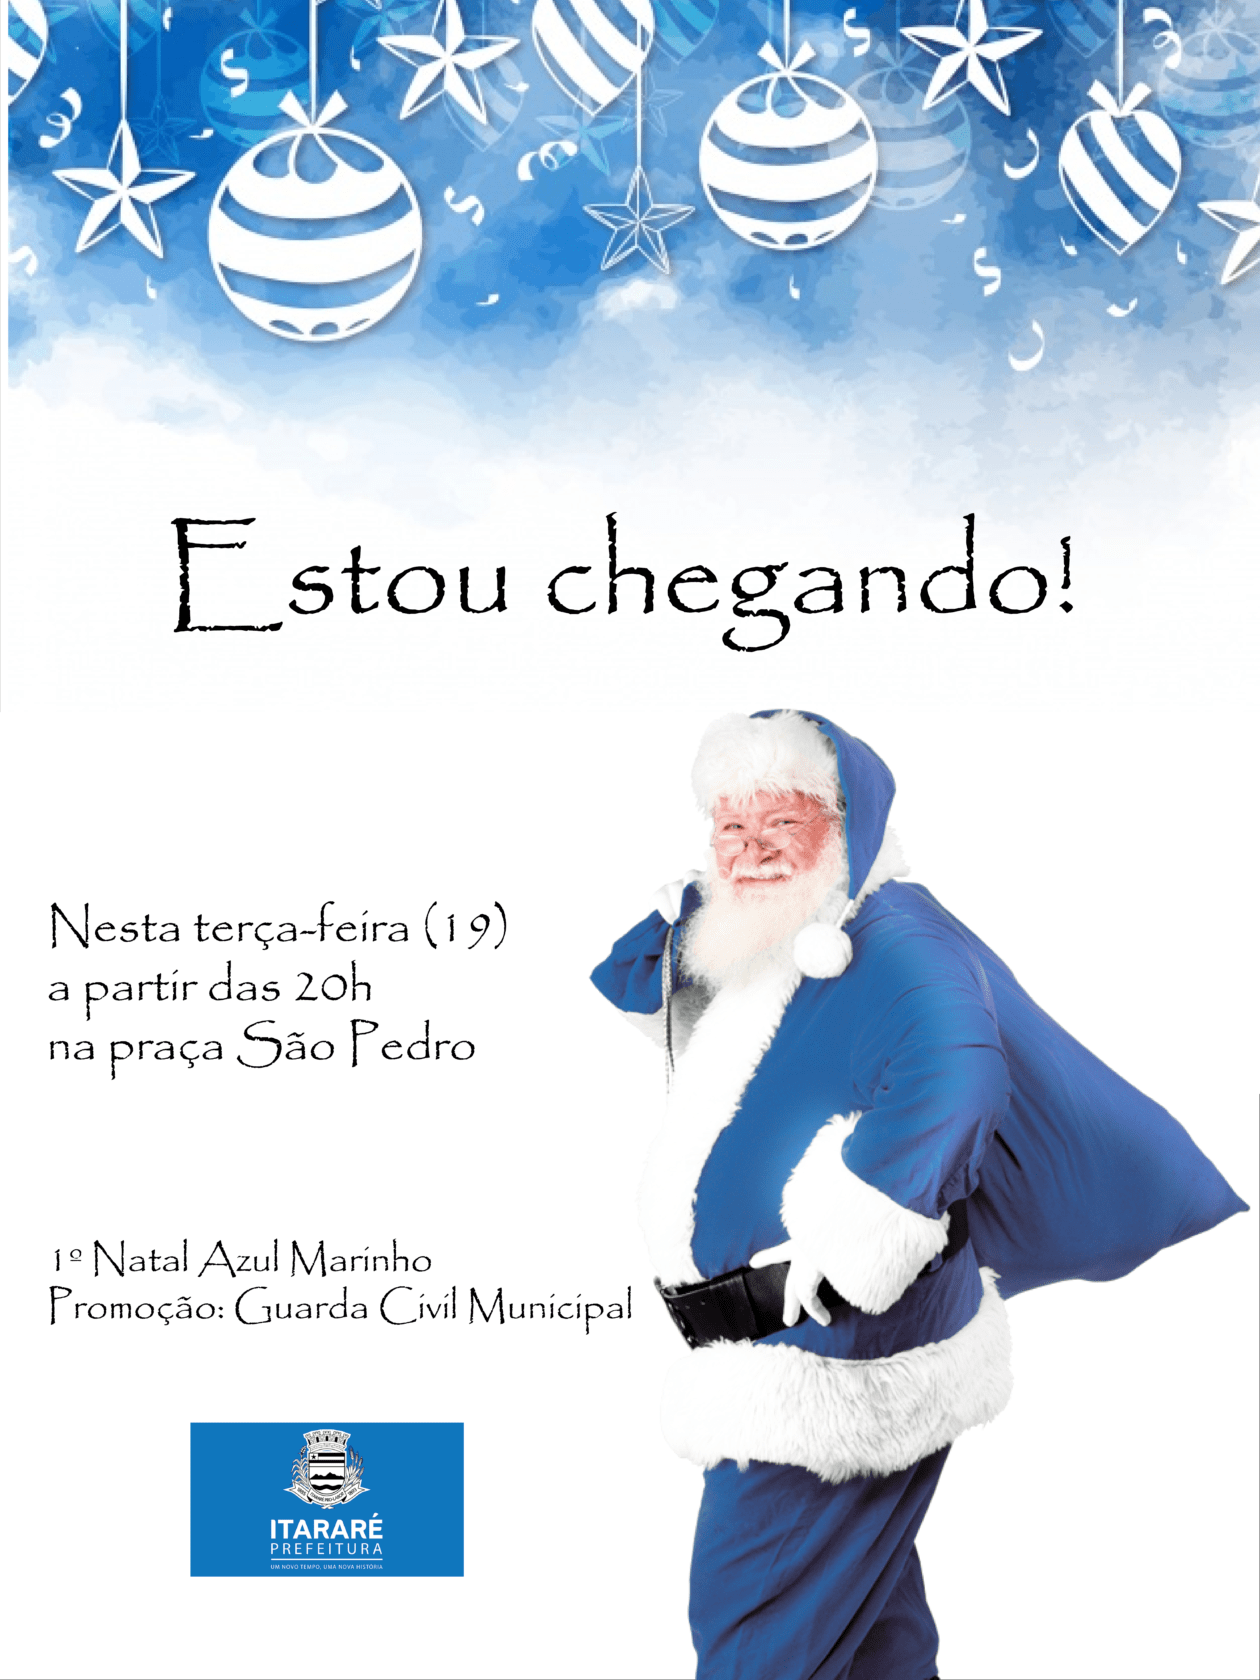 Papai Noel azul chega nesta terça-feira (19) em Itararé (SP)